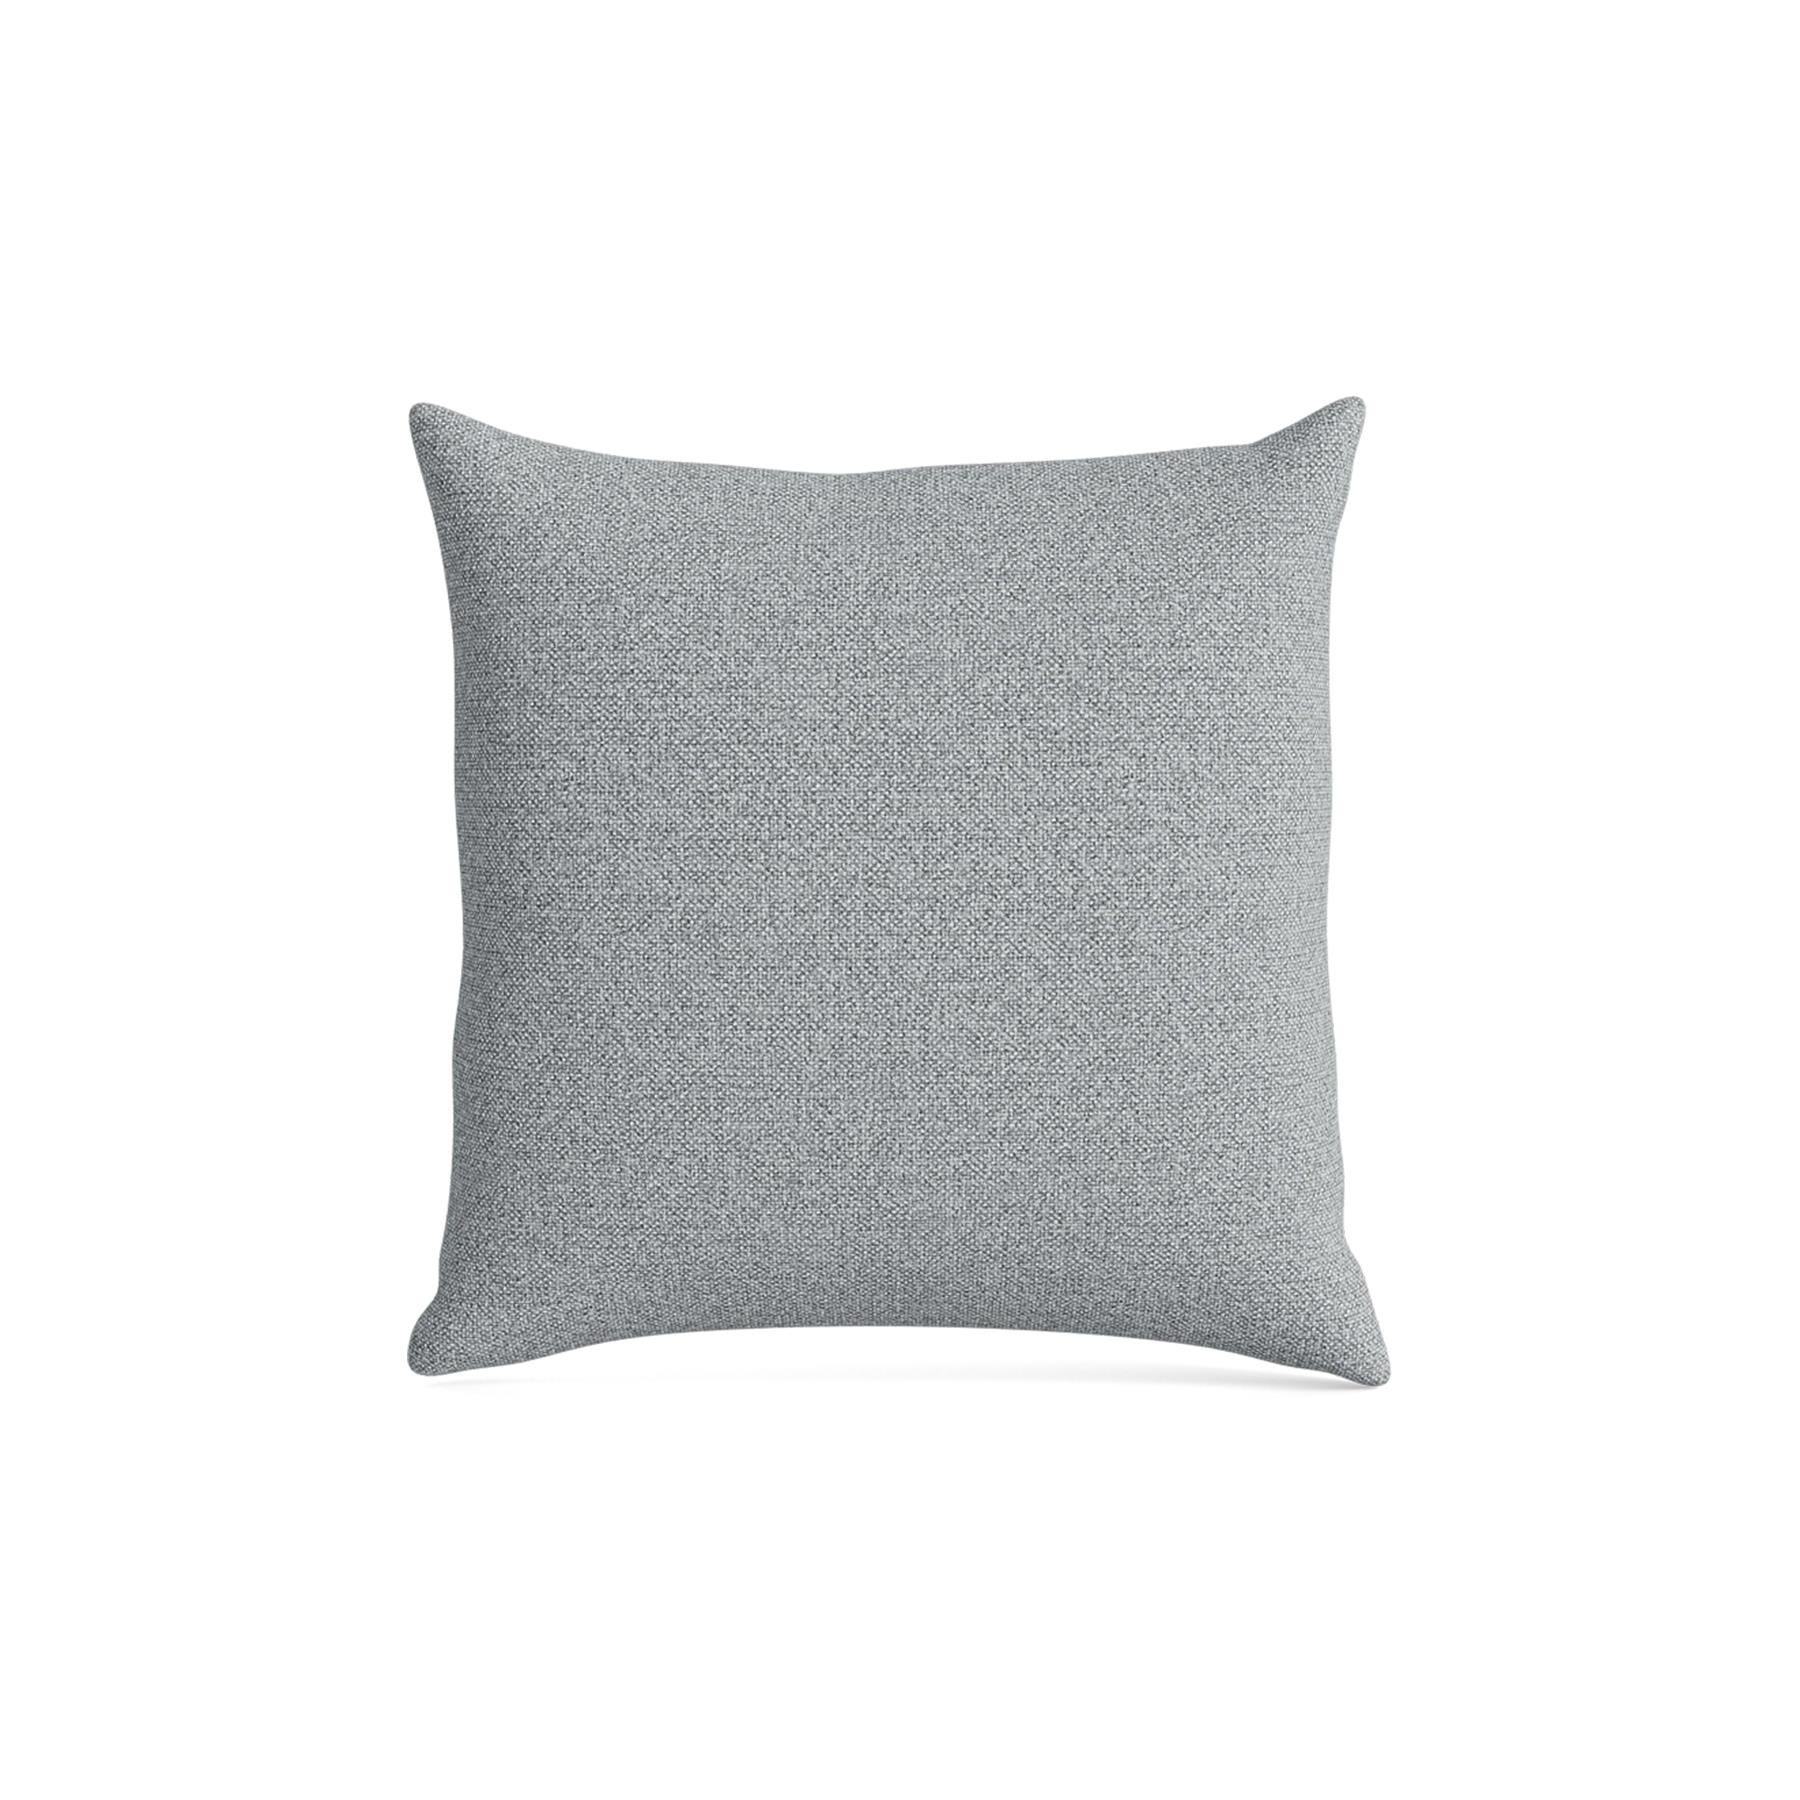 Make Nordic Pillow 40cmx40cm Hallingdal 130 Down And Fibers Grey